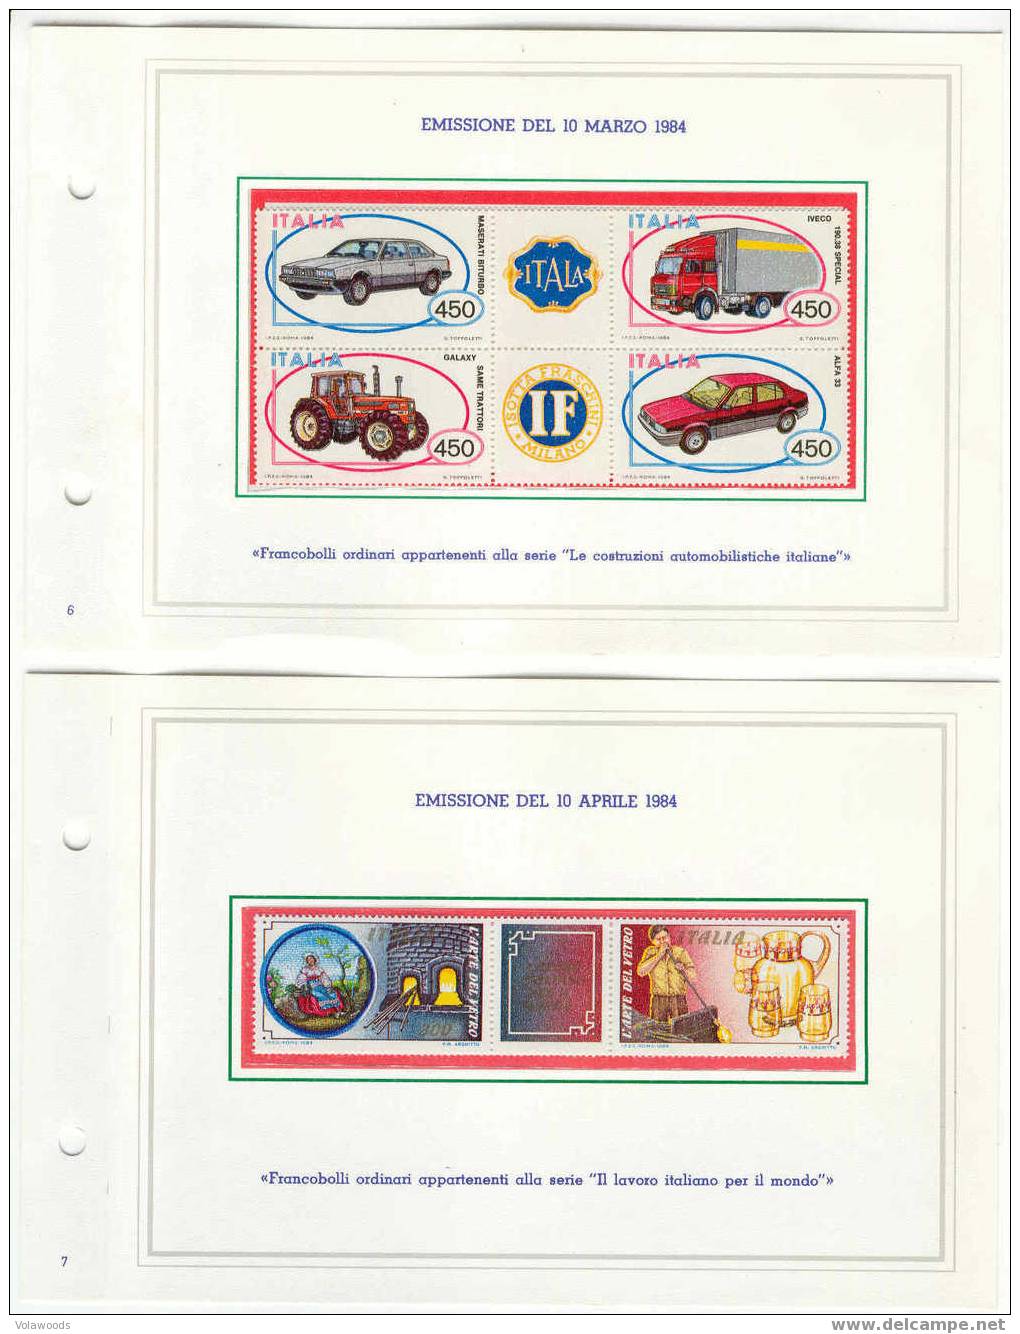 Italia - Annata Completa 1984 In Libretto Delle Poste Completo Di Tutte Le Carte Valori Emesse (con Interi Postali) - Volledige Jaargang